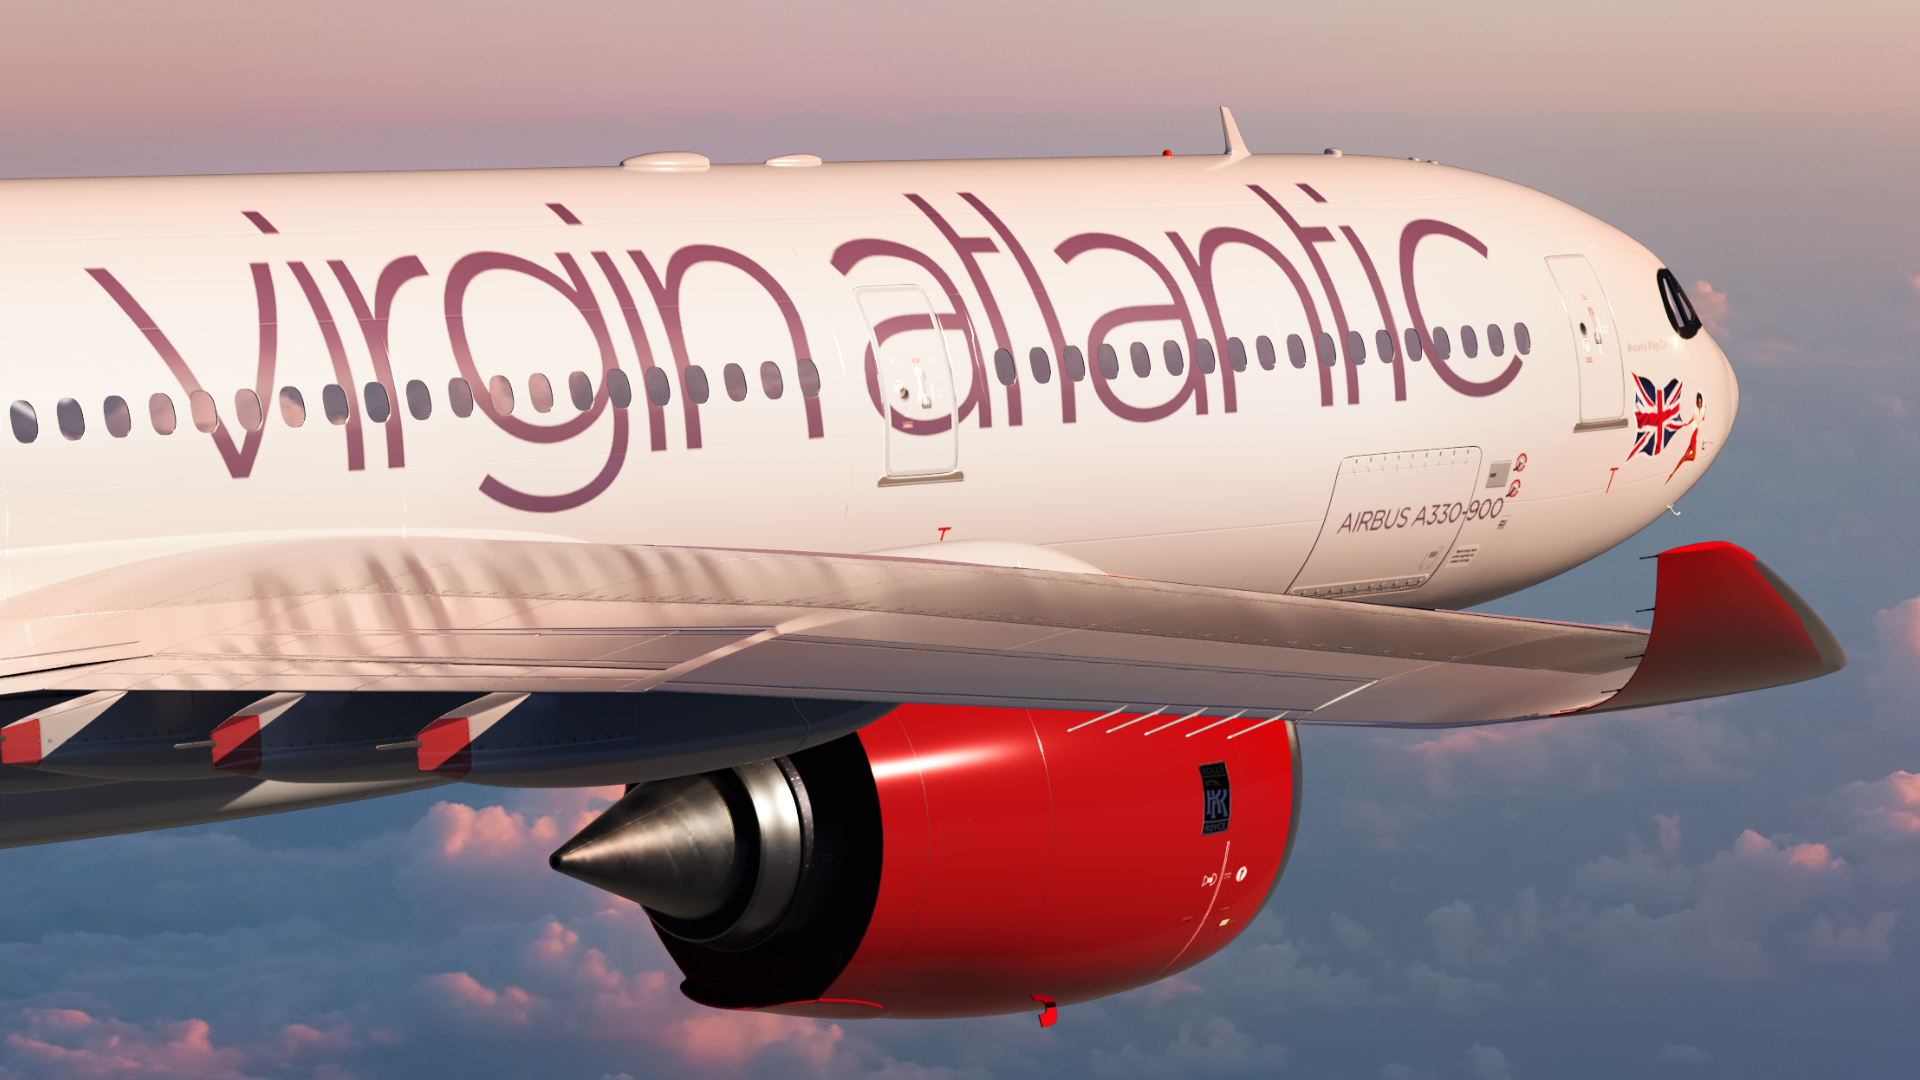 Sabena technics va asigura întreținerea de bază la Bordeaux pentru aeronavele Virgin Atlantic A330neo